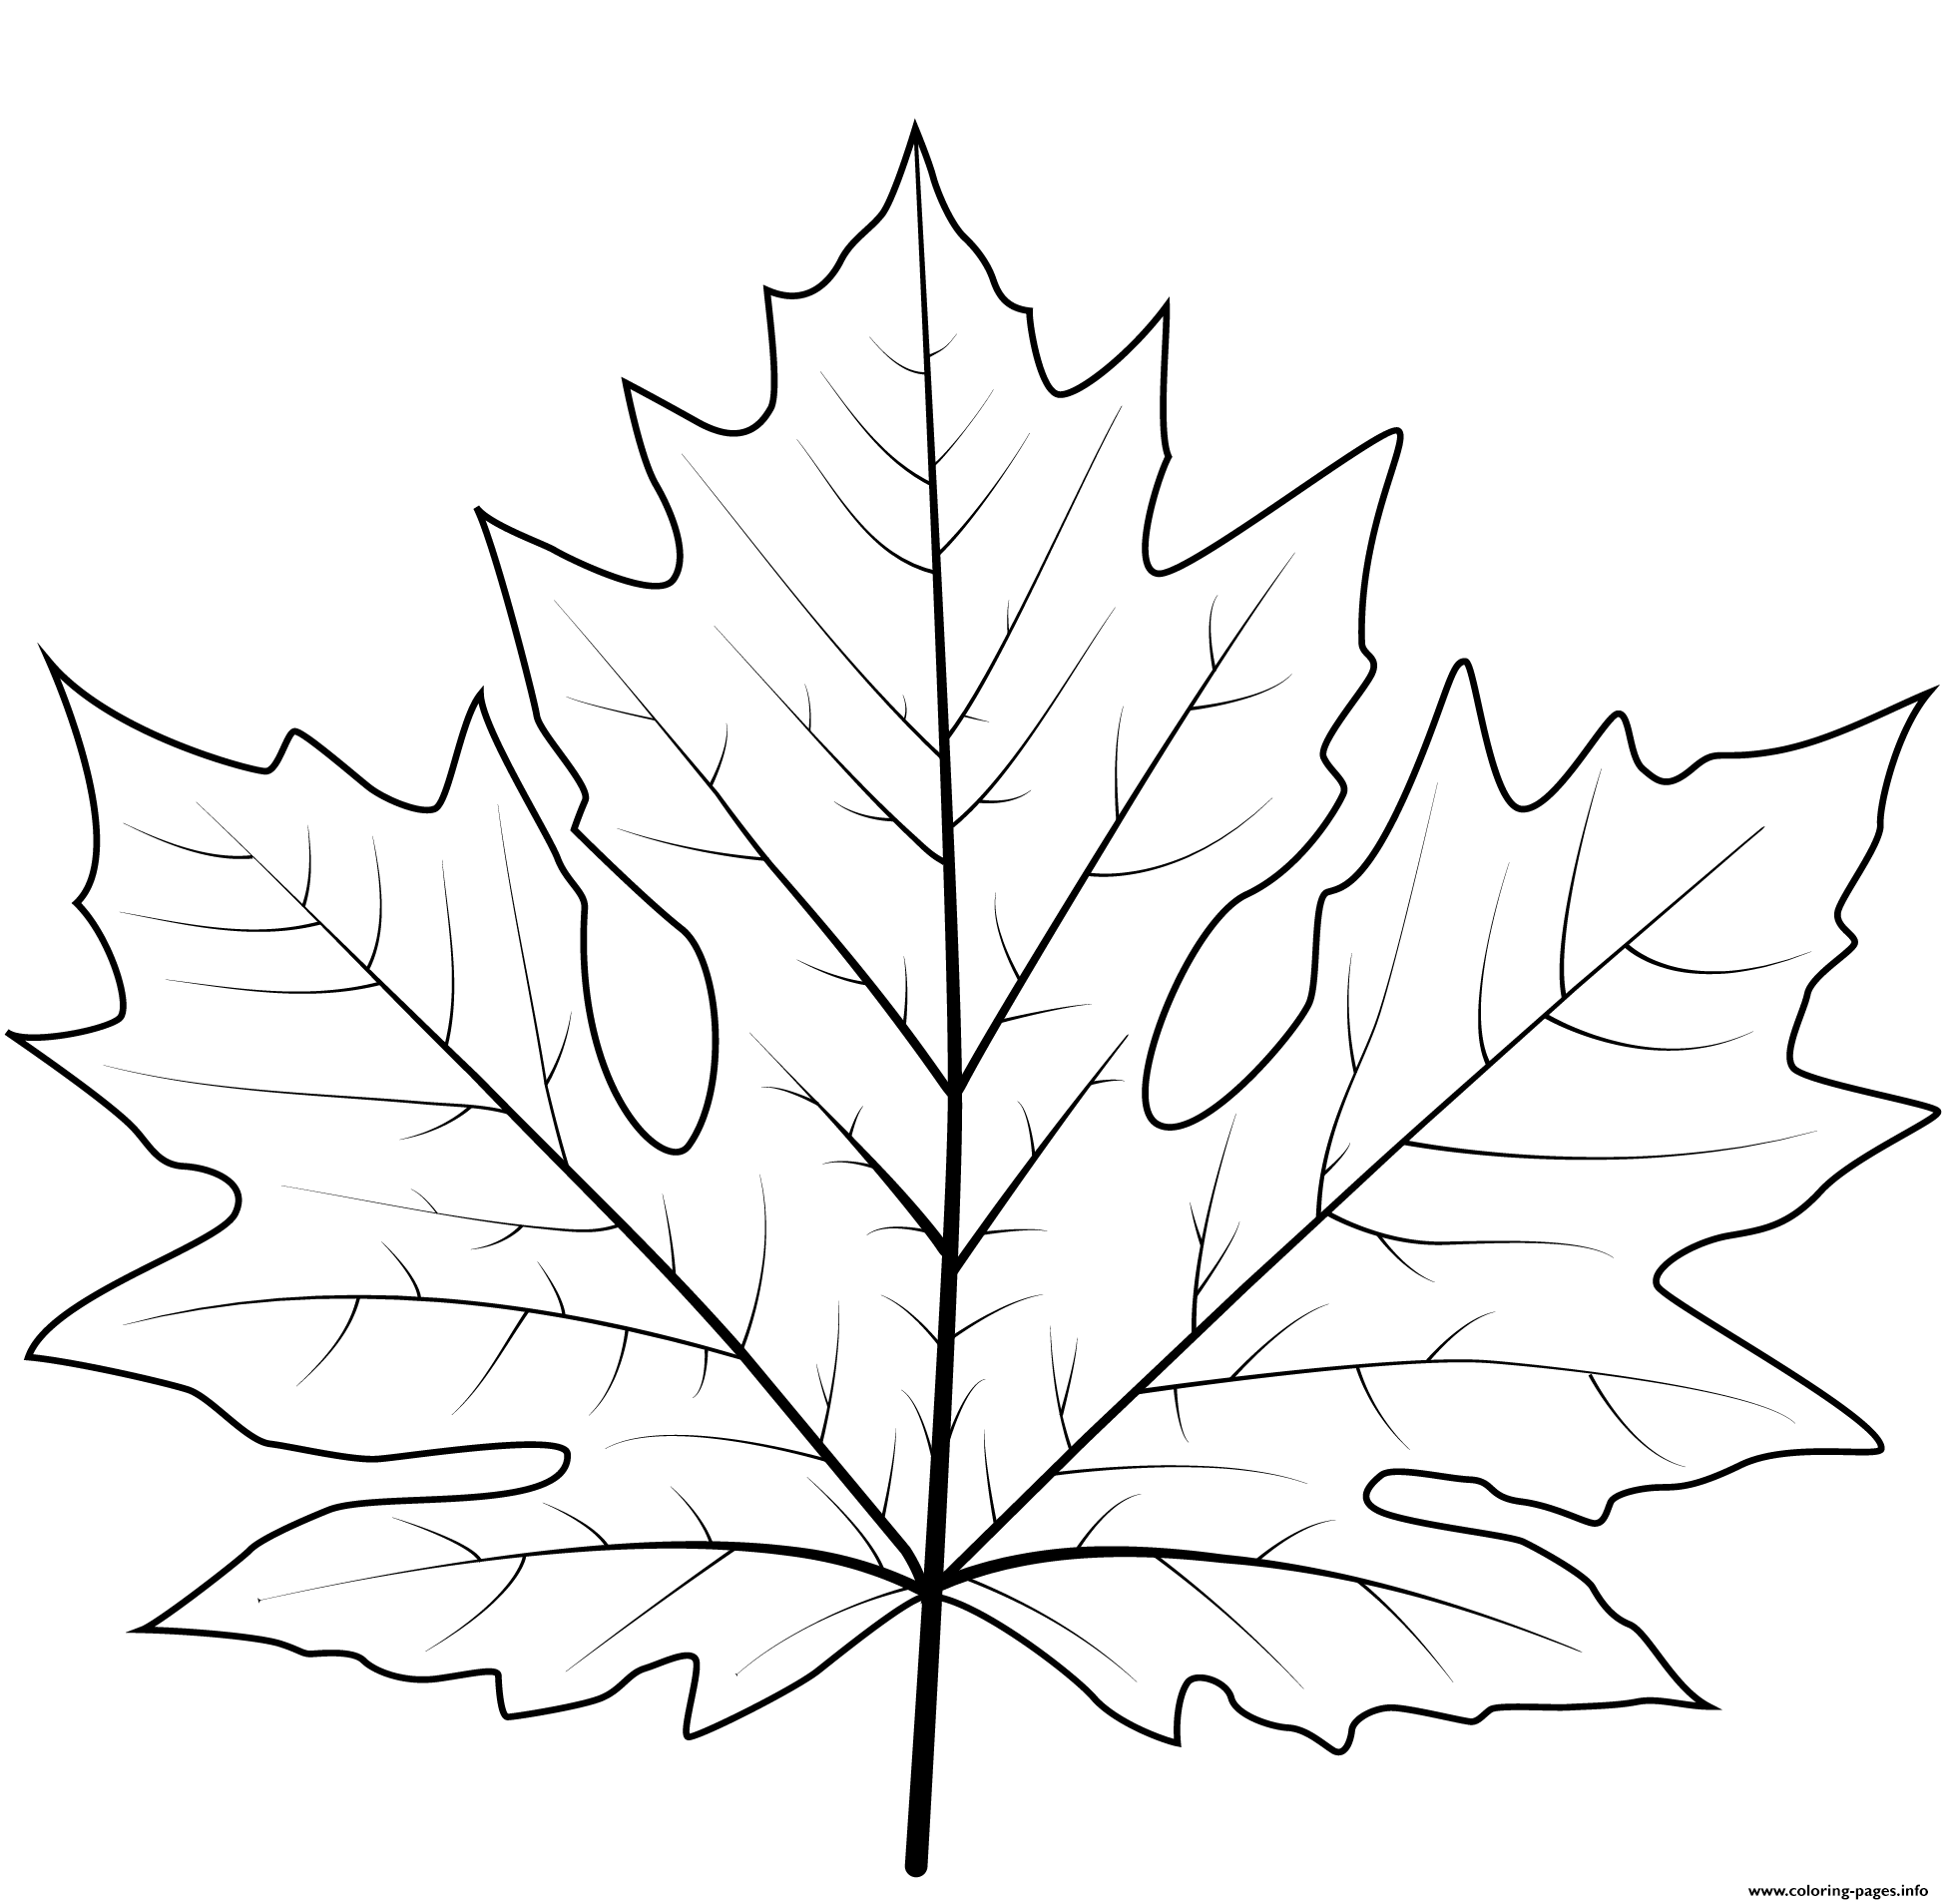 leaf-coloring-page-printable